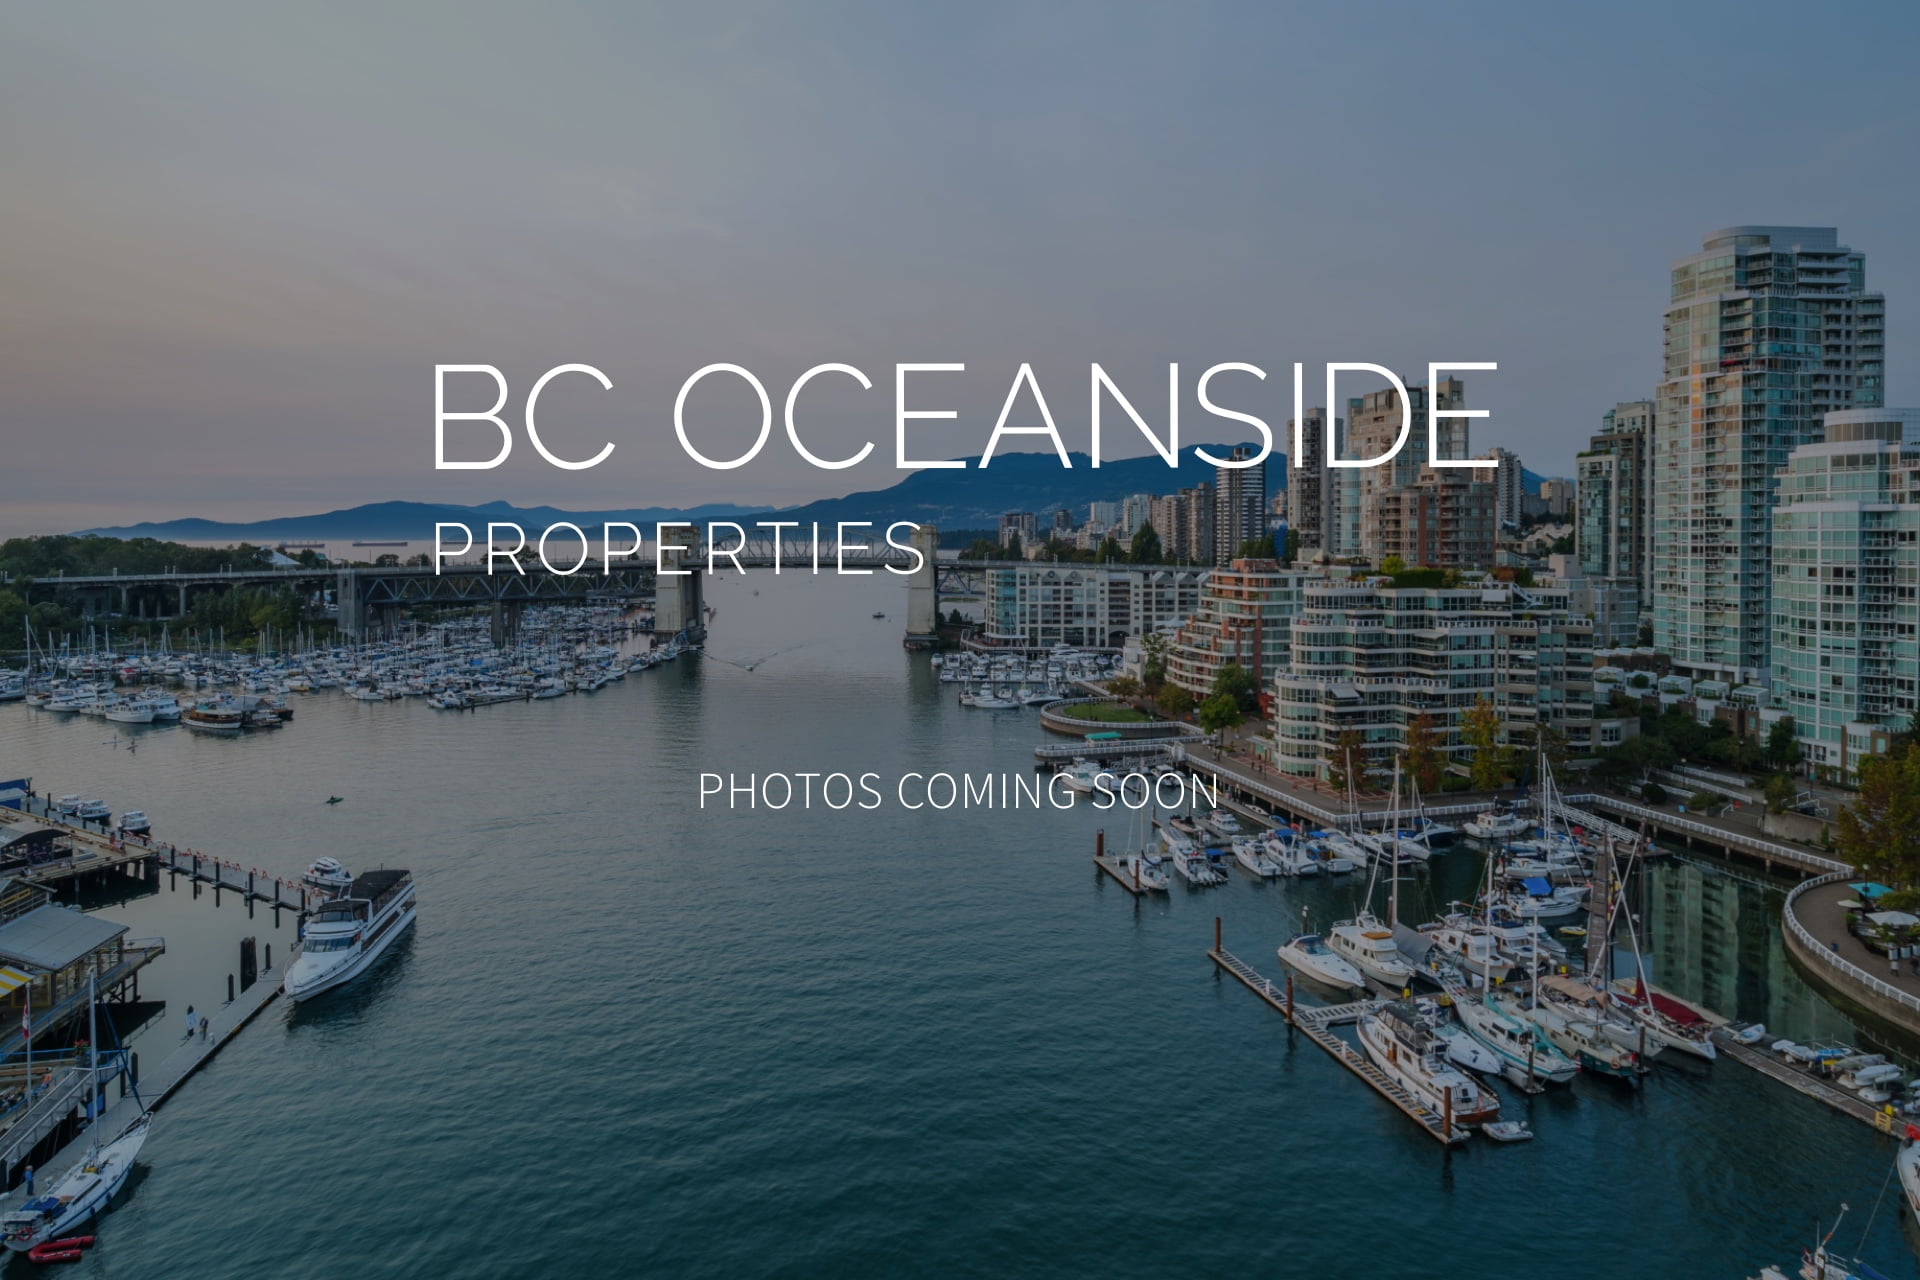 Ken & Samantha - Vancouver Real Estate Agents blog